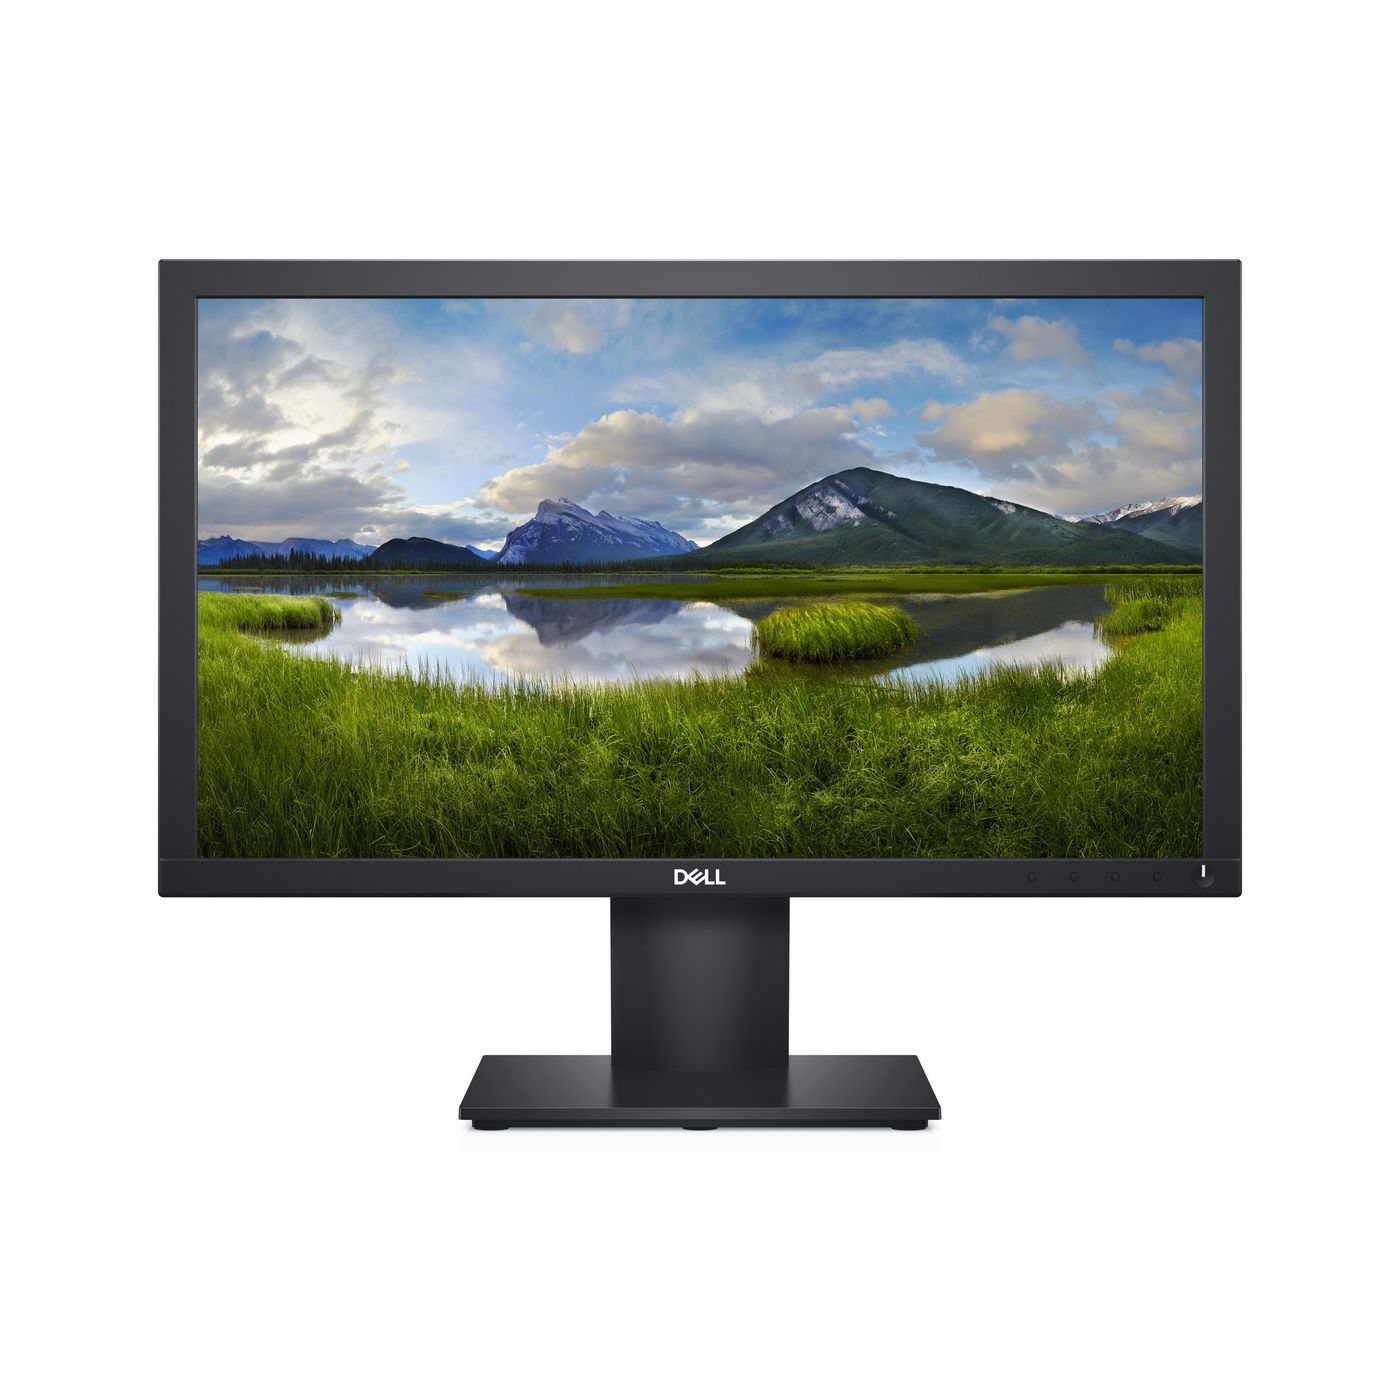 Monitor E2020H - 19.5" Black